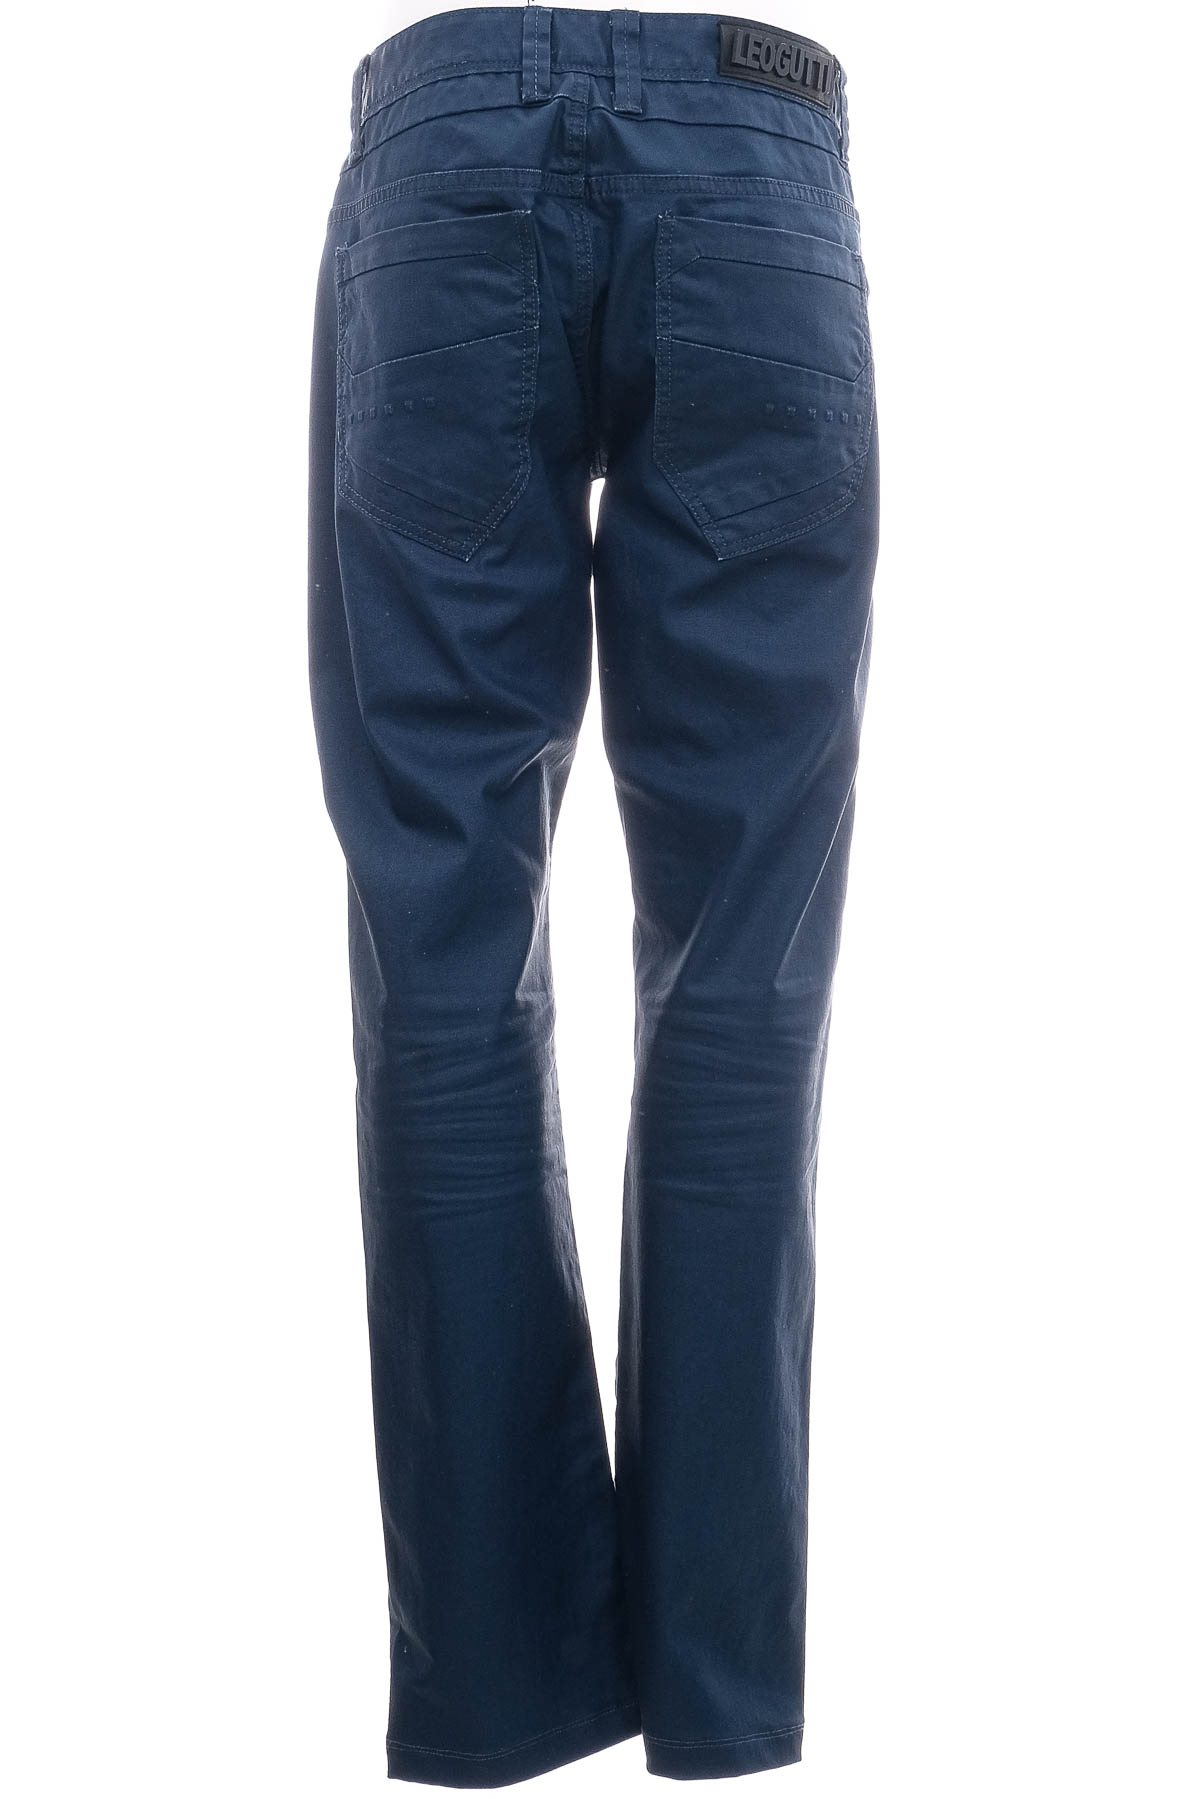 Men's jeans - Leo Gutti - 1